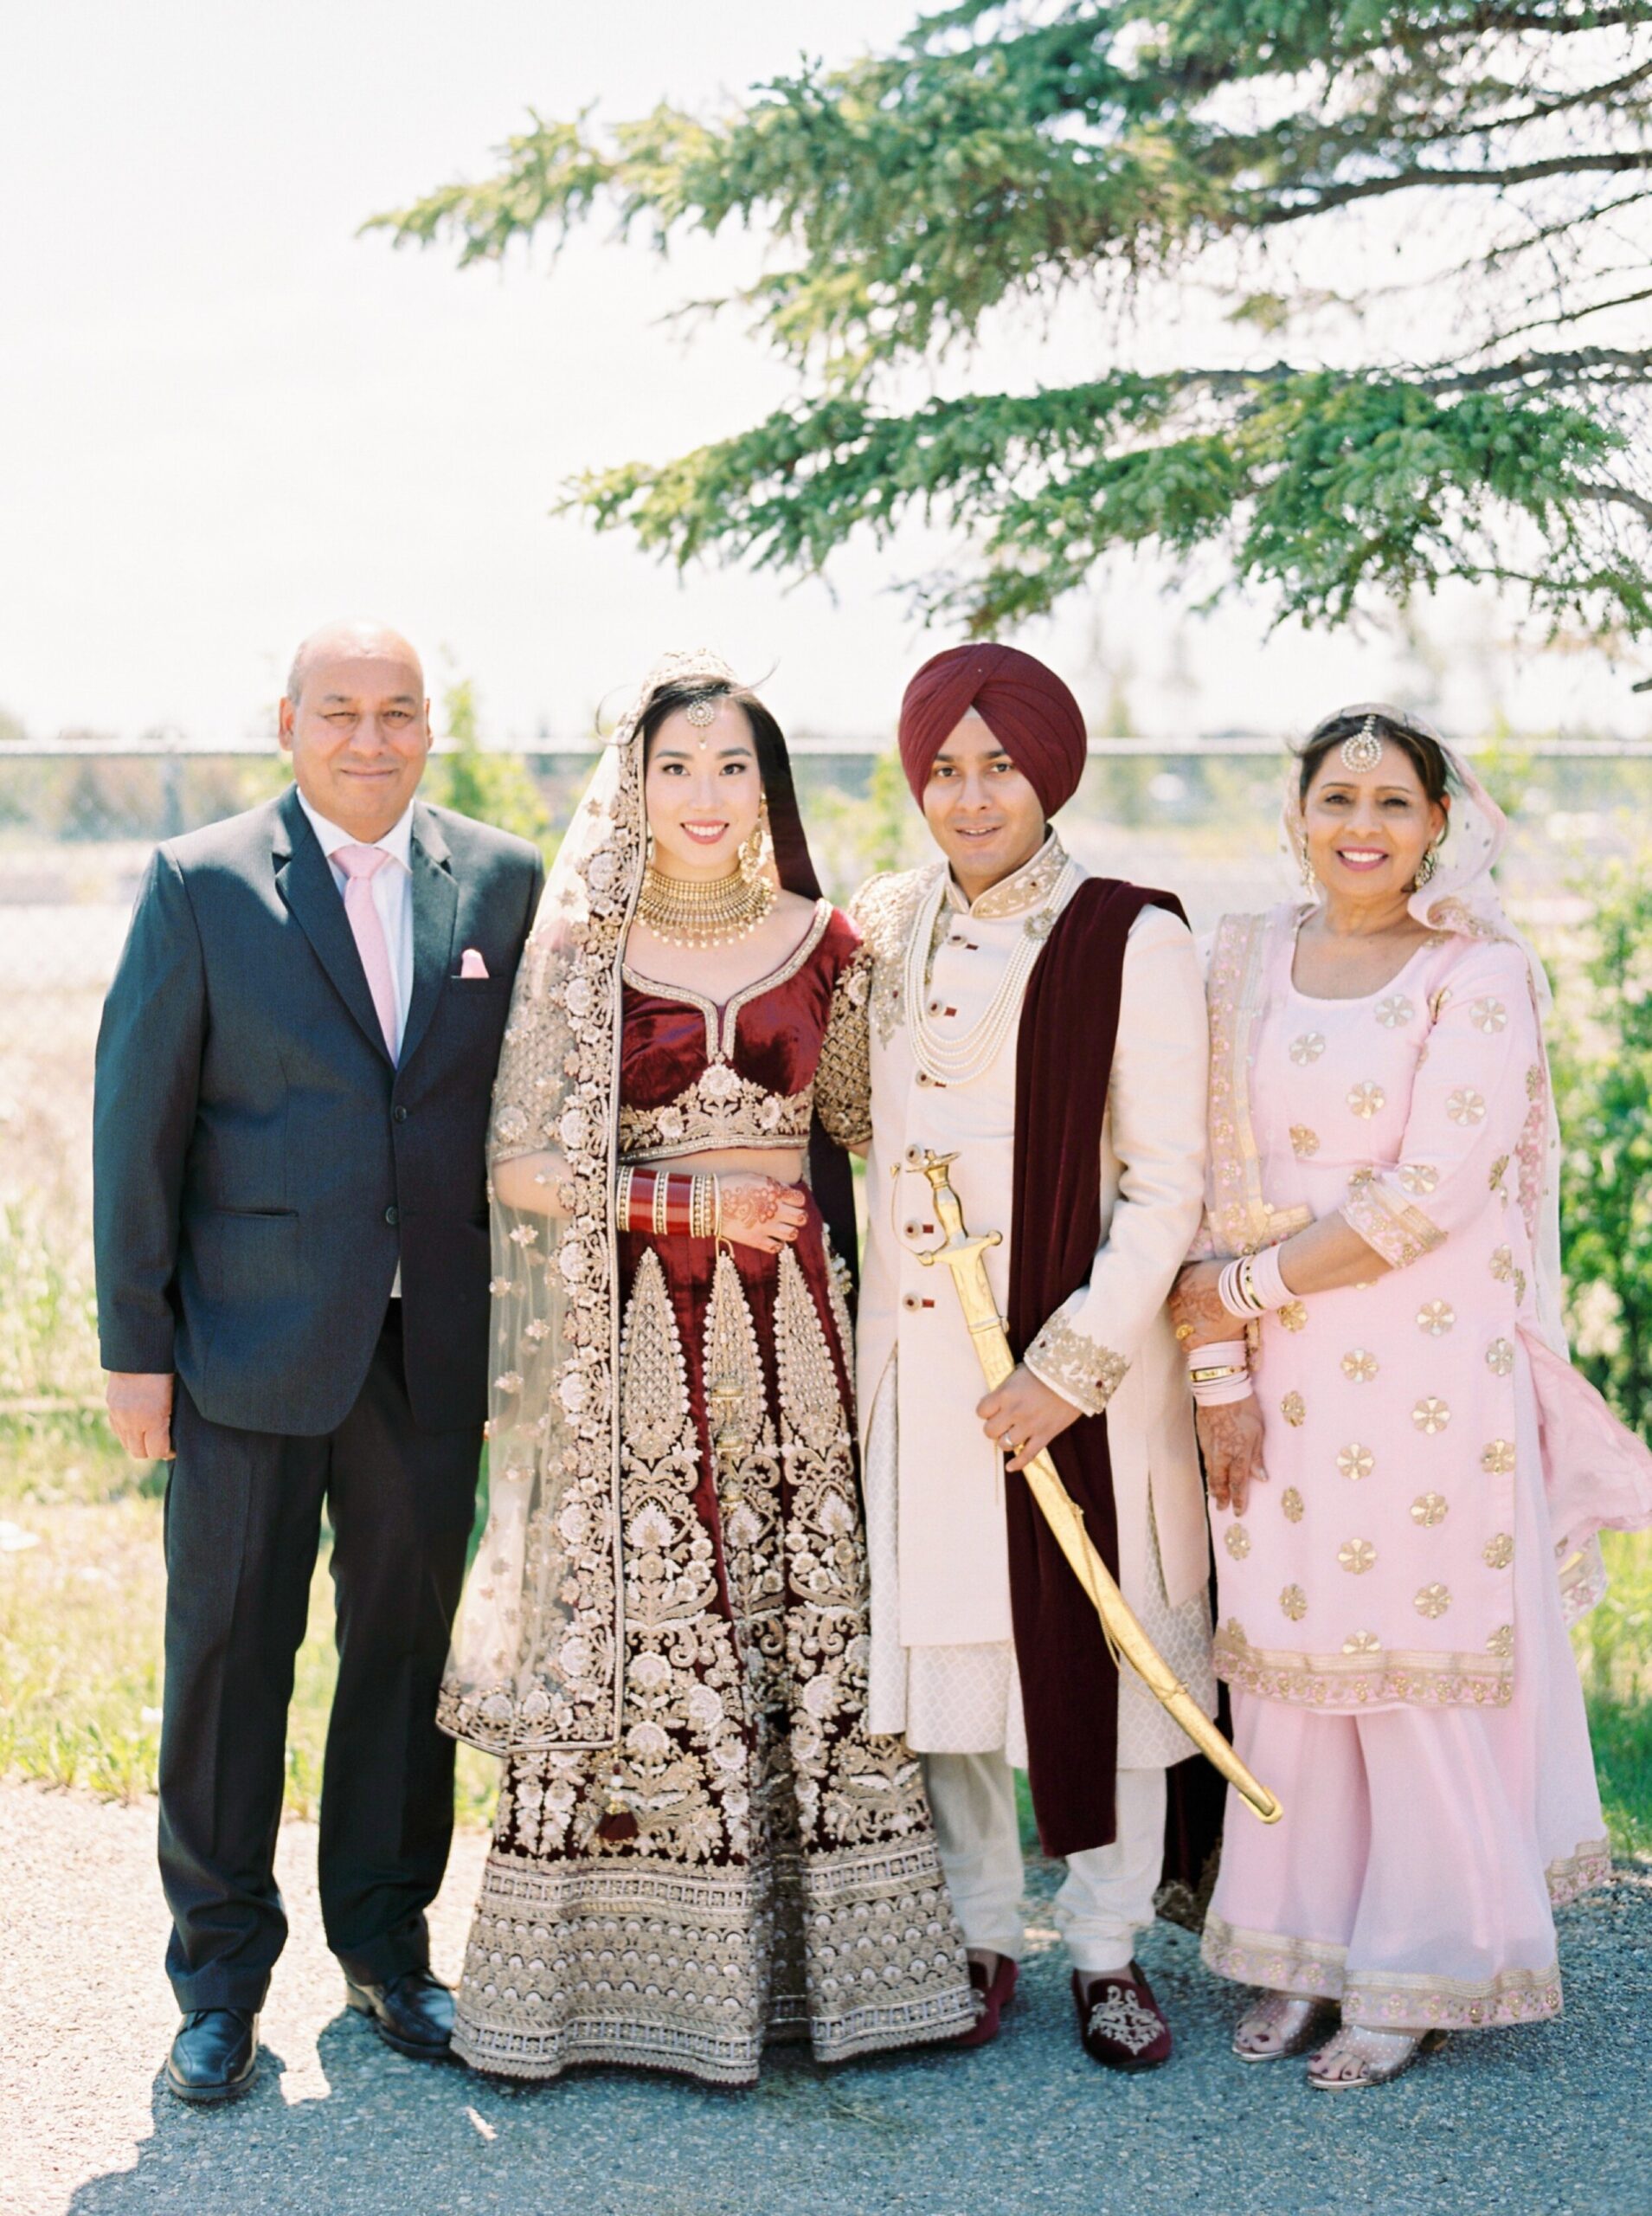  traditional Sikh wedding family portraits | Indian Chinese Fusion Wedding | Calgary wedding photographers 